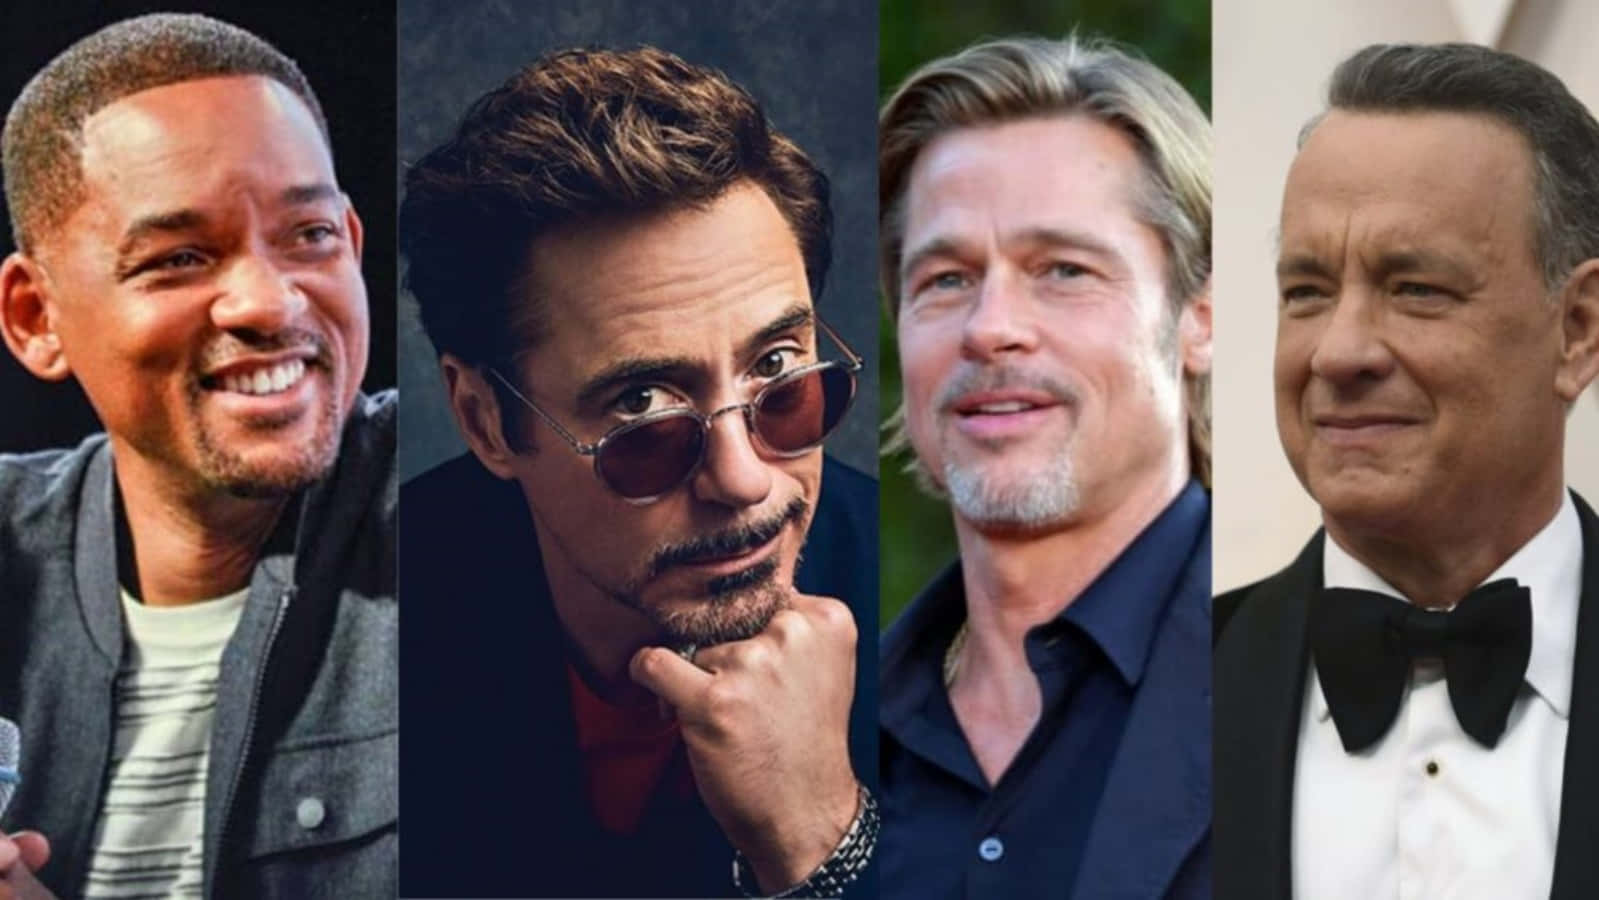 Hollywoodfilmstars Wie Emily Blunt, Ryan Gosling Und Chris Pine Werden Für Ihre Ikonischen Rollen Geschätzt.